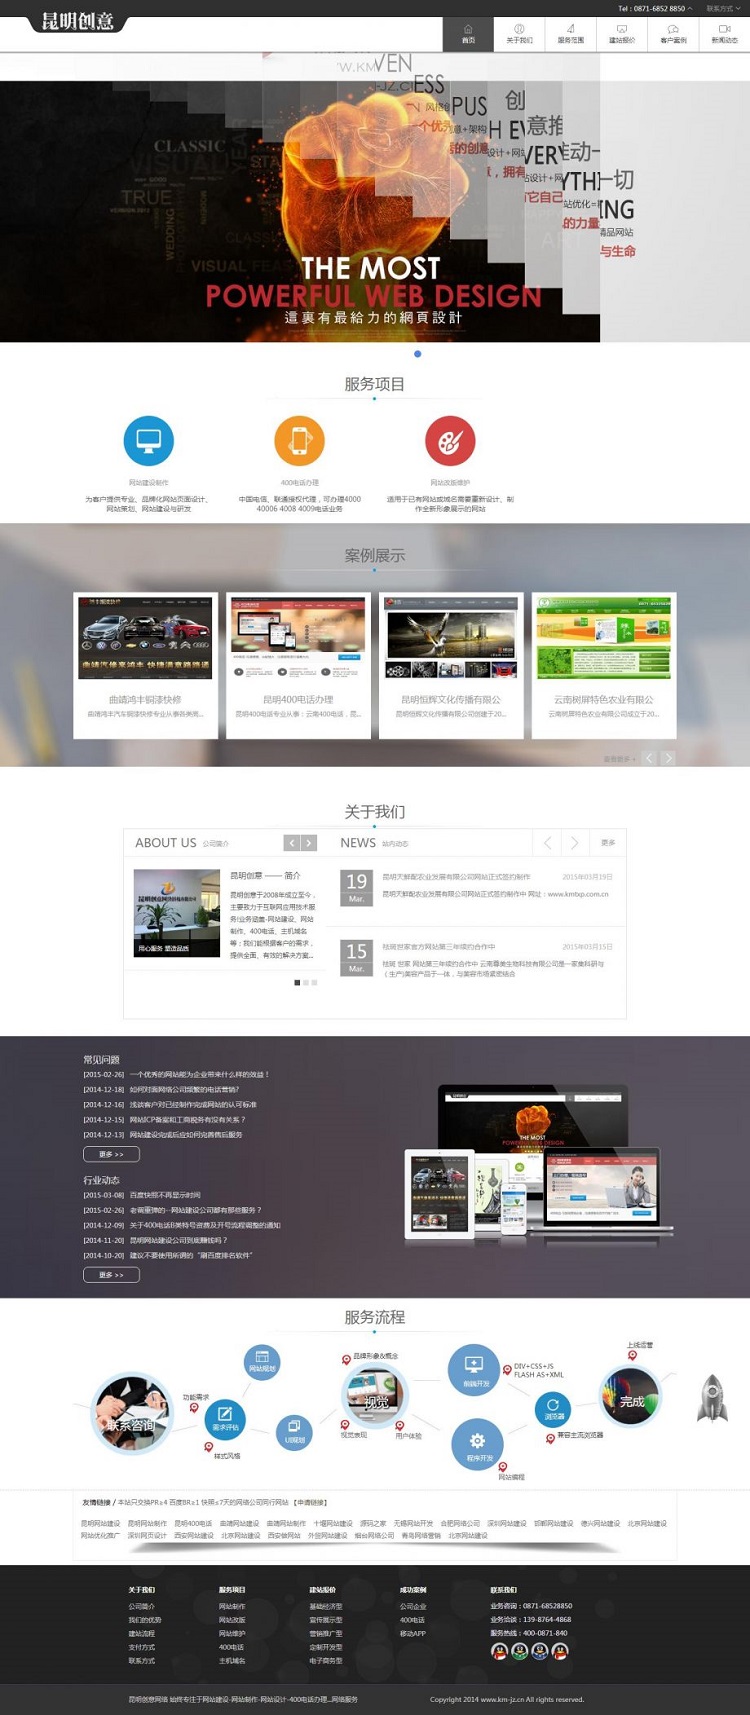     简洁的css3创意设计广告公司网站模板								
